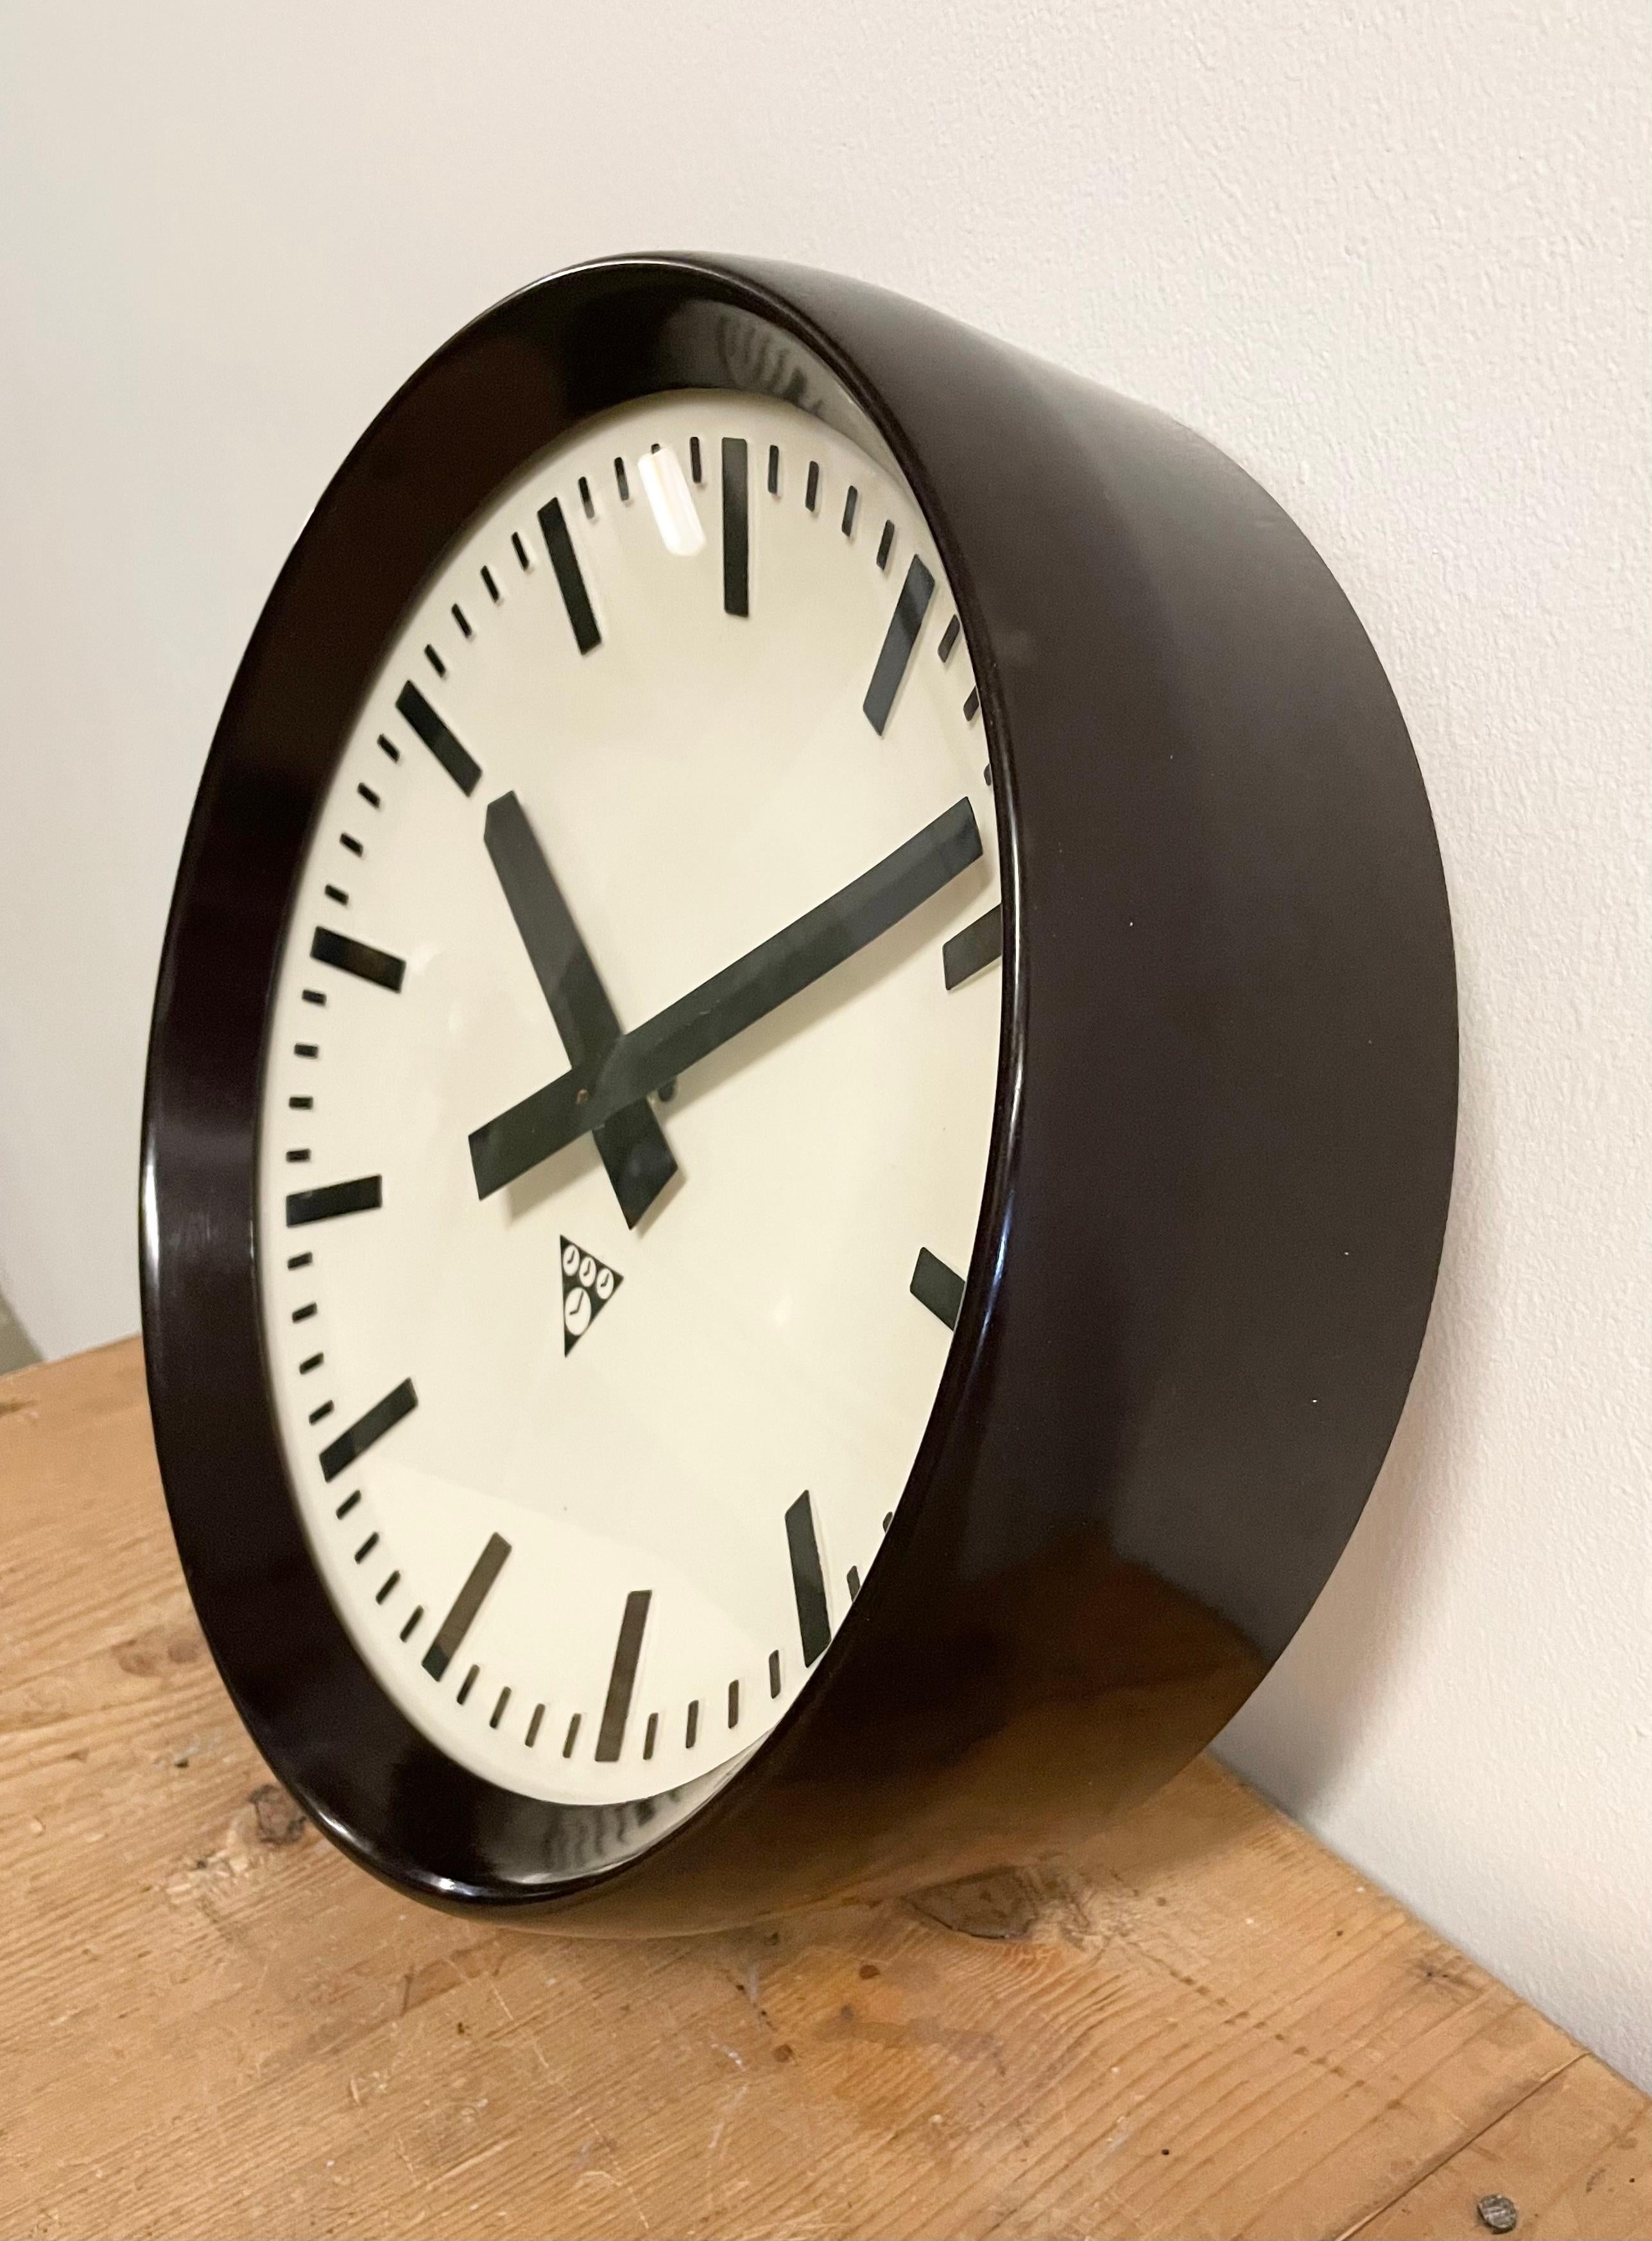 Diese Wanduhr wurde von Pragotron in der ehemaligen Tschechoslowakei in den 1960er Jahren hergestellt. Die Uhr hat einen braunen Bakelitrahmen, ein weißes Bakelitzifferblatt, Aluminiumzeiger und eine gewölbte Klarglasabdeckung. Das Stück wurde in